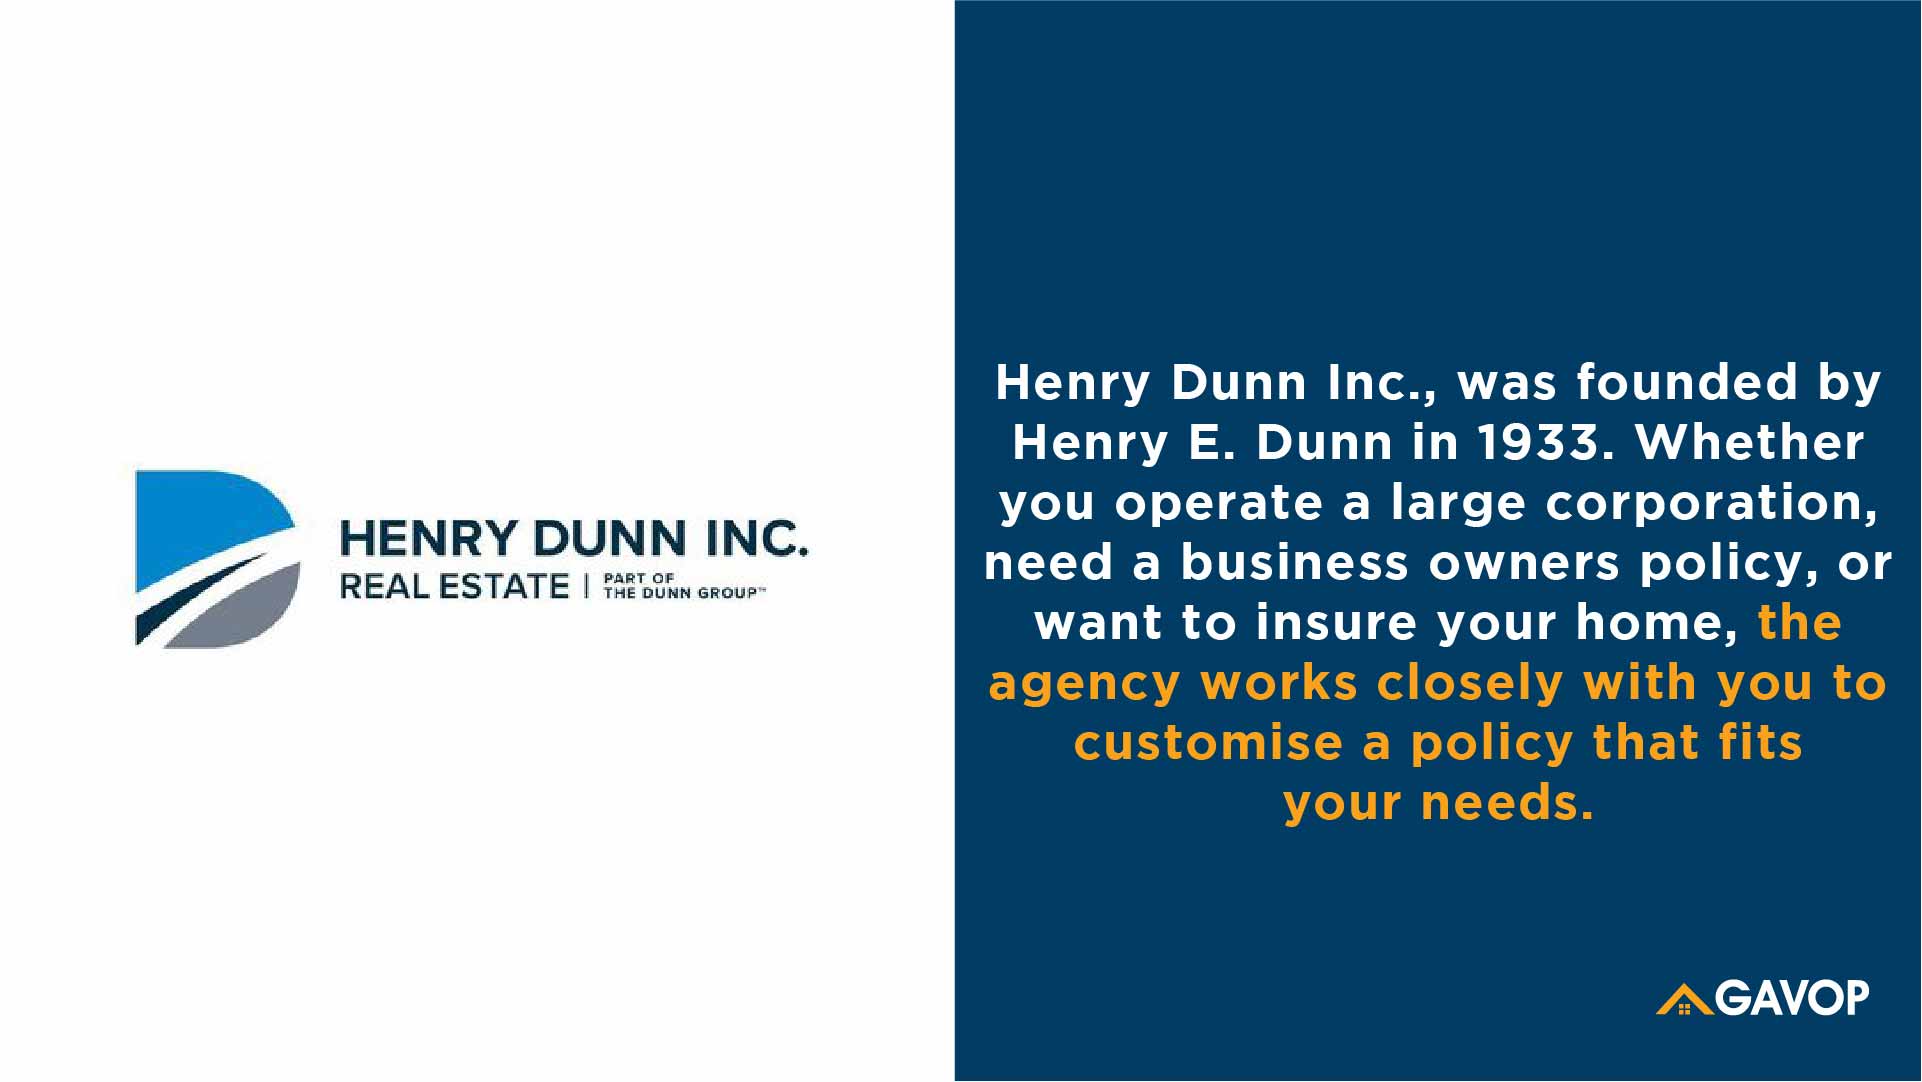 Henry Dunn Inc